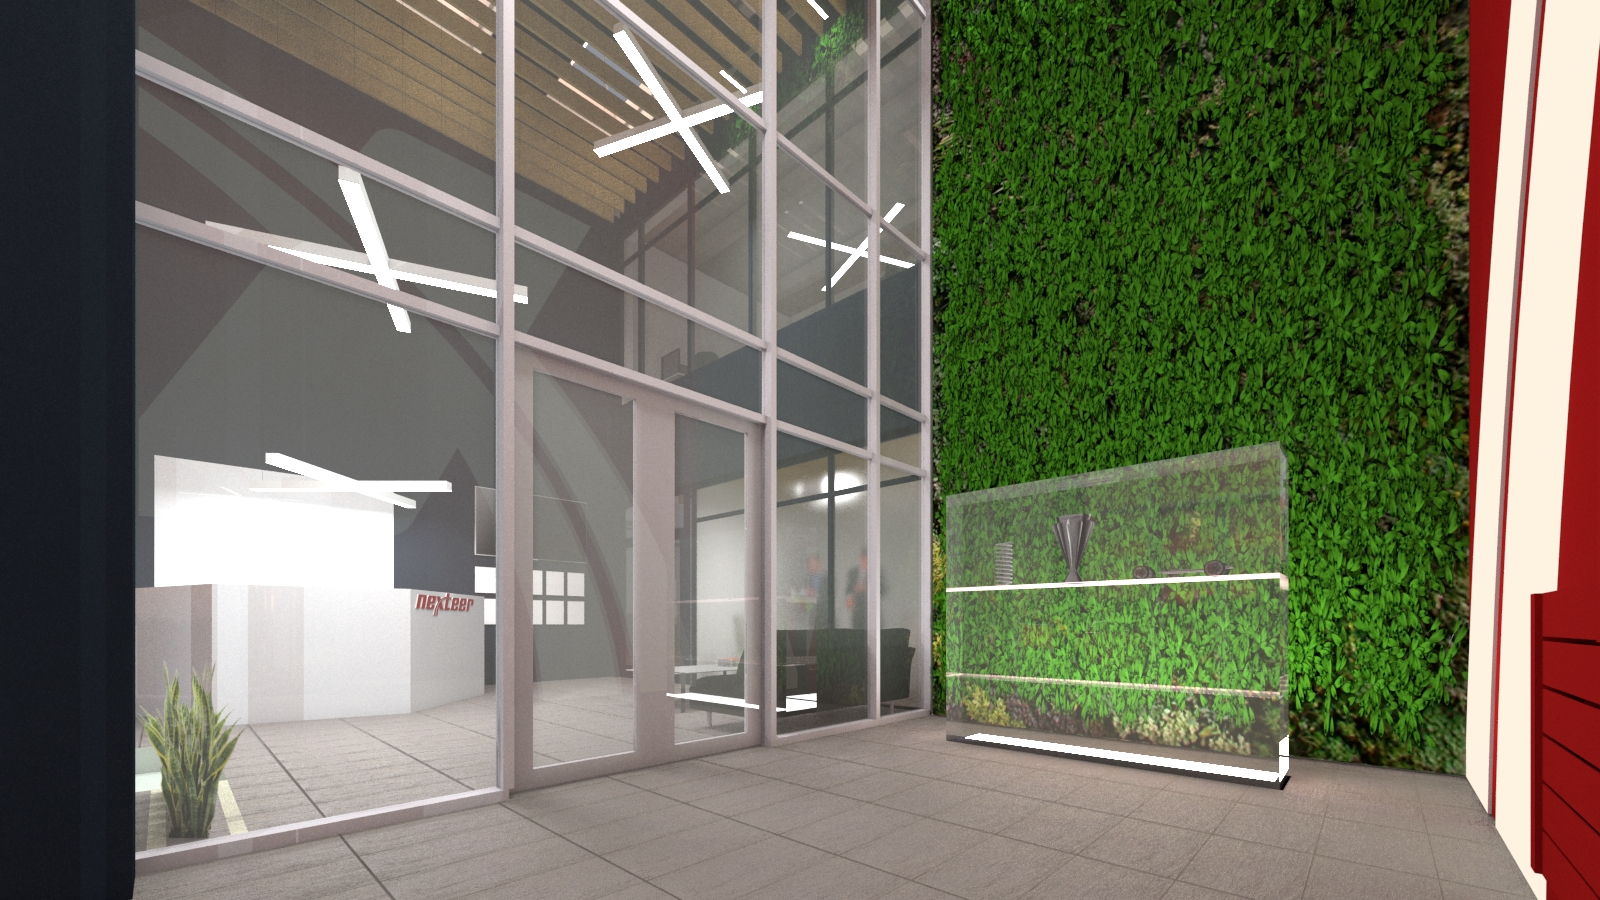 Zdjęcie pokazuje wizualizację budynku biurowego Nexteer w Tychach zaprojektowanego przez biuro projektowe BAUREN z Rybnika